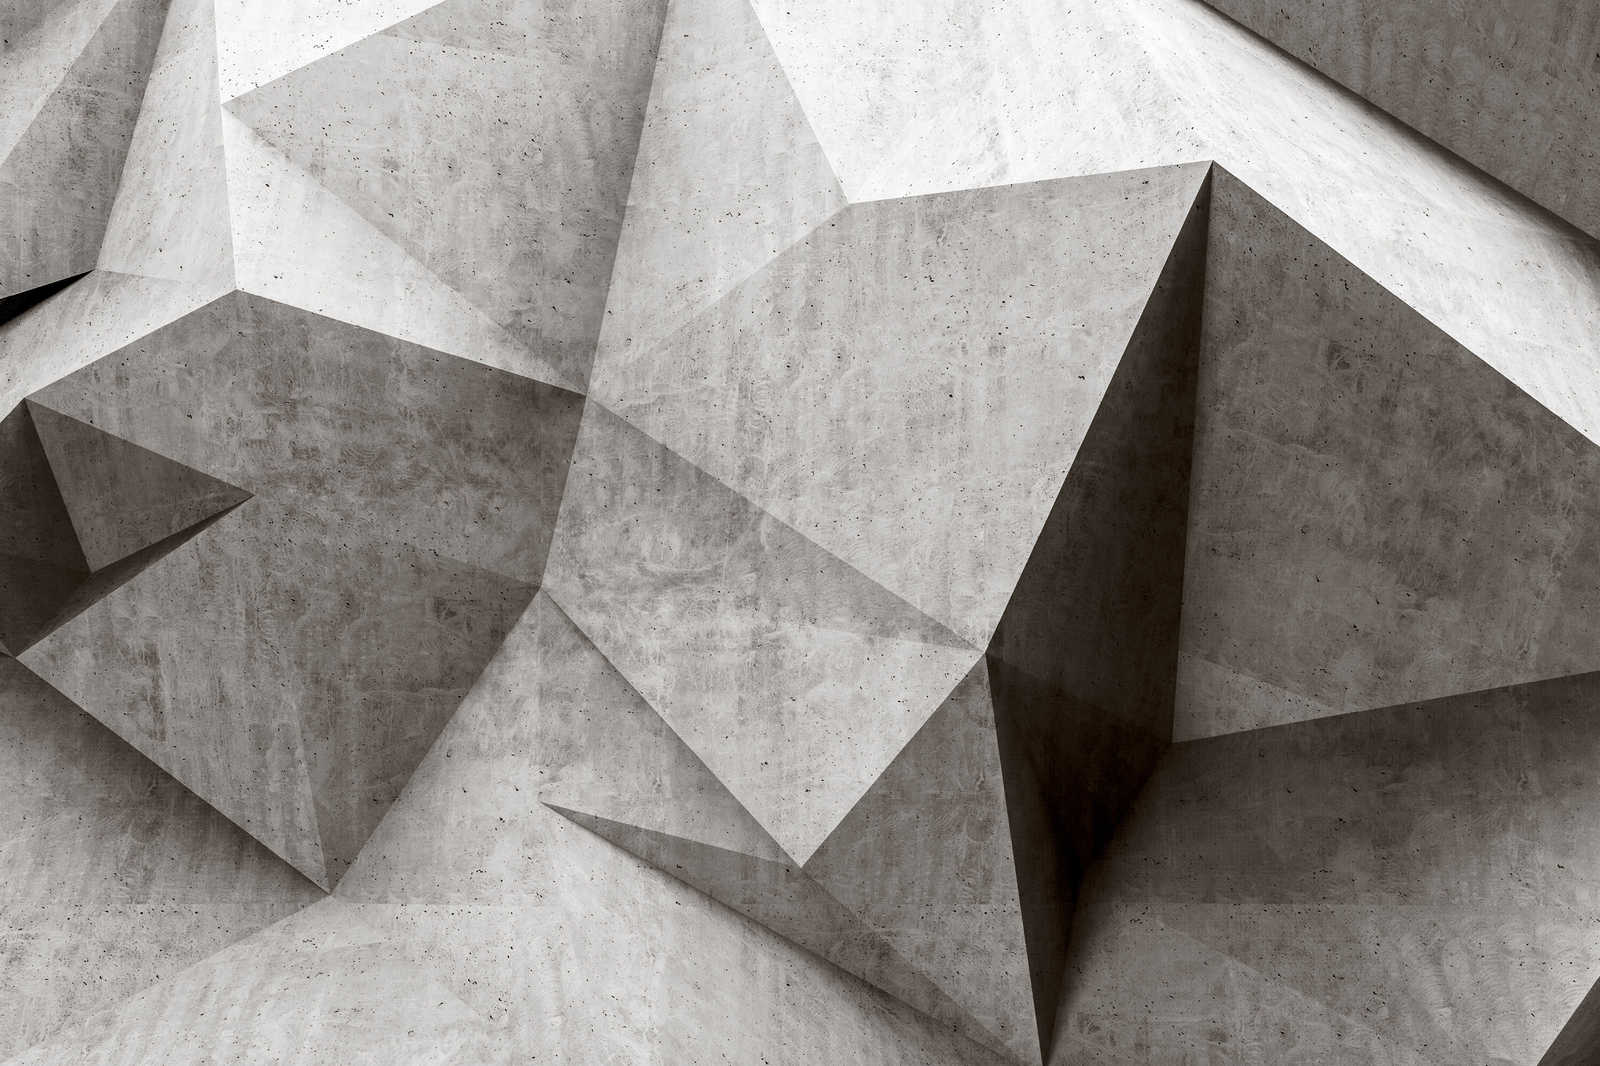             Boulder 1 - Cool 3D Concrete Polygons Canvas Painting - 0.90 m x 0.60 m
        